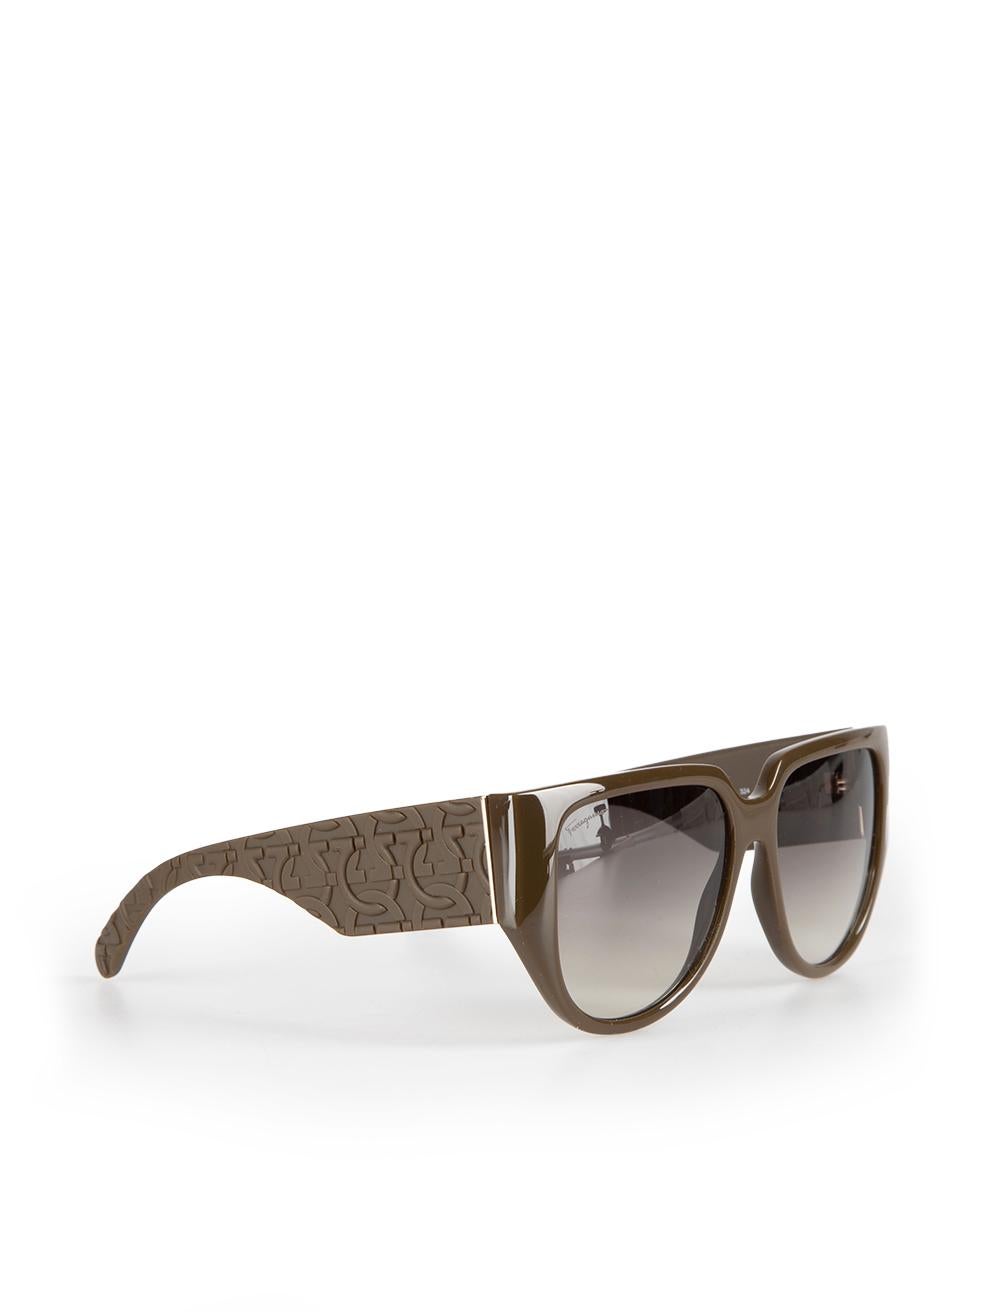 Salvatore Ferragamo Dark Khaki Browline Gradient Sunglasses In New Condition For Sale In London, GB